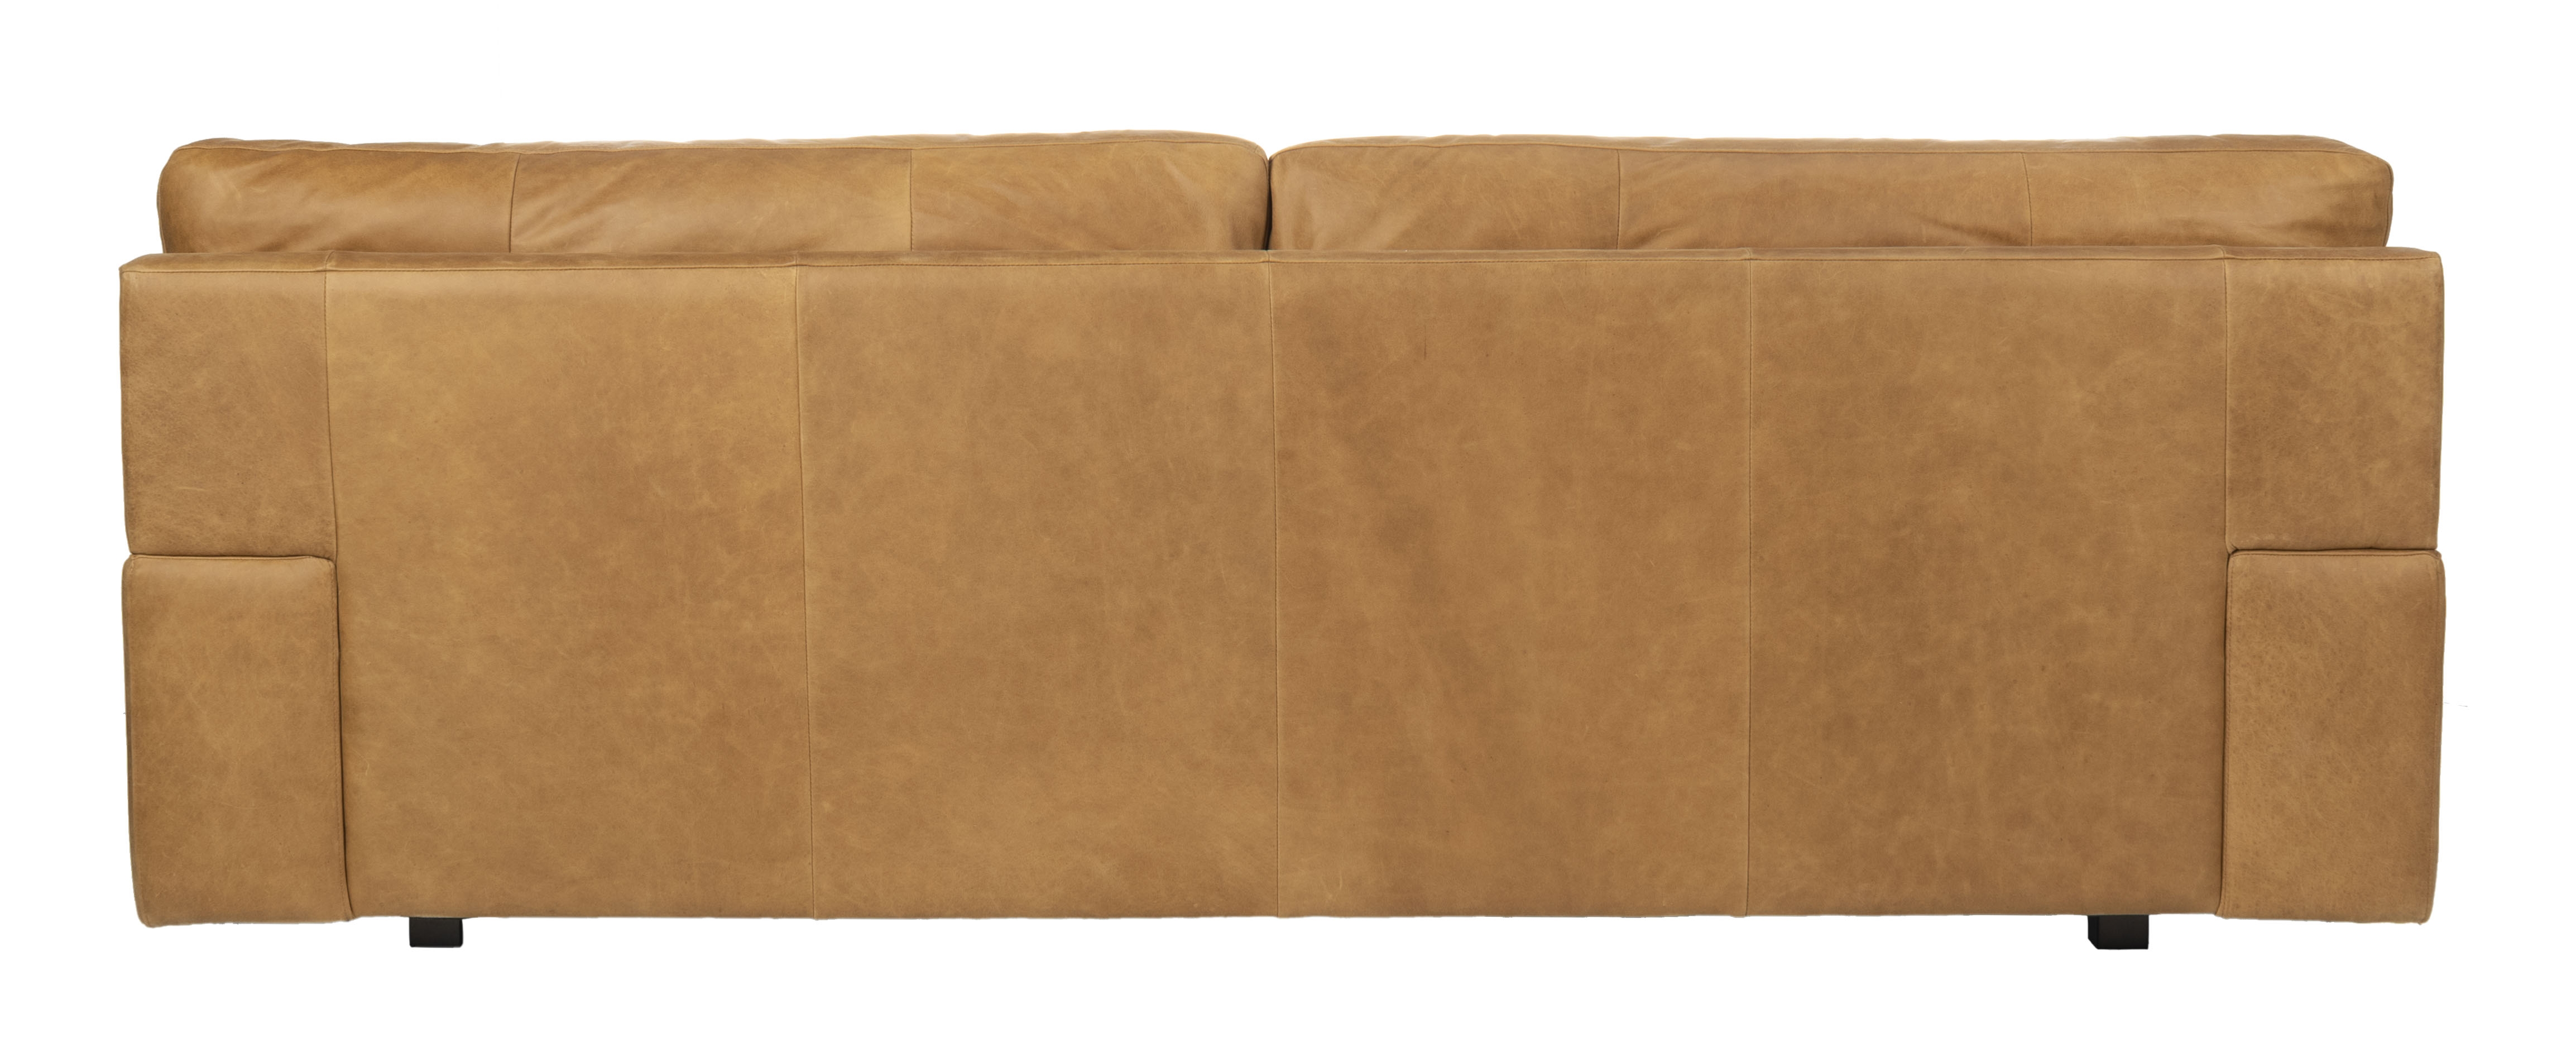 Osma Italian Leather Sofa, Caramel - Image 4